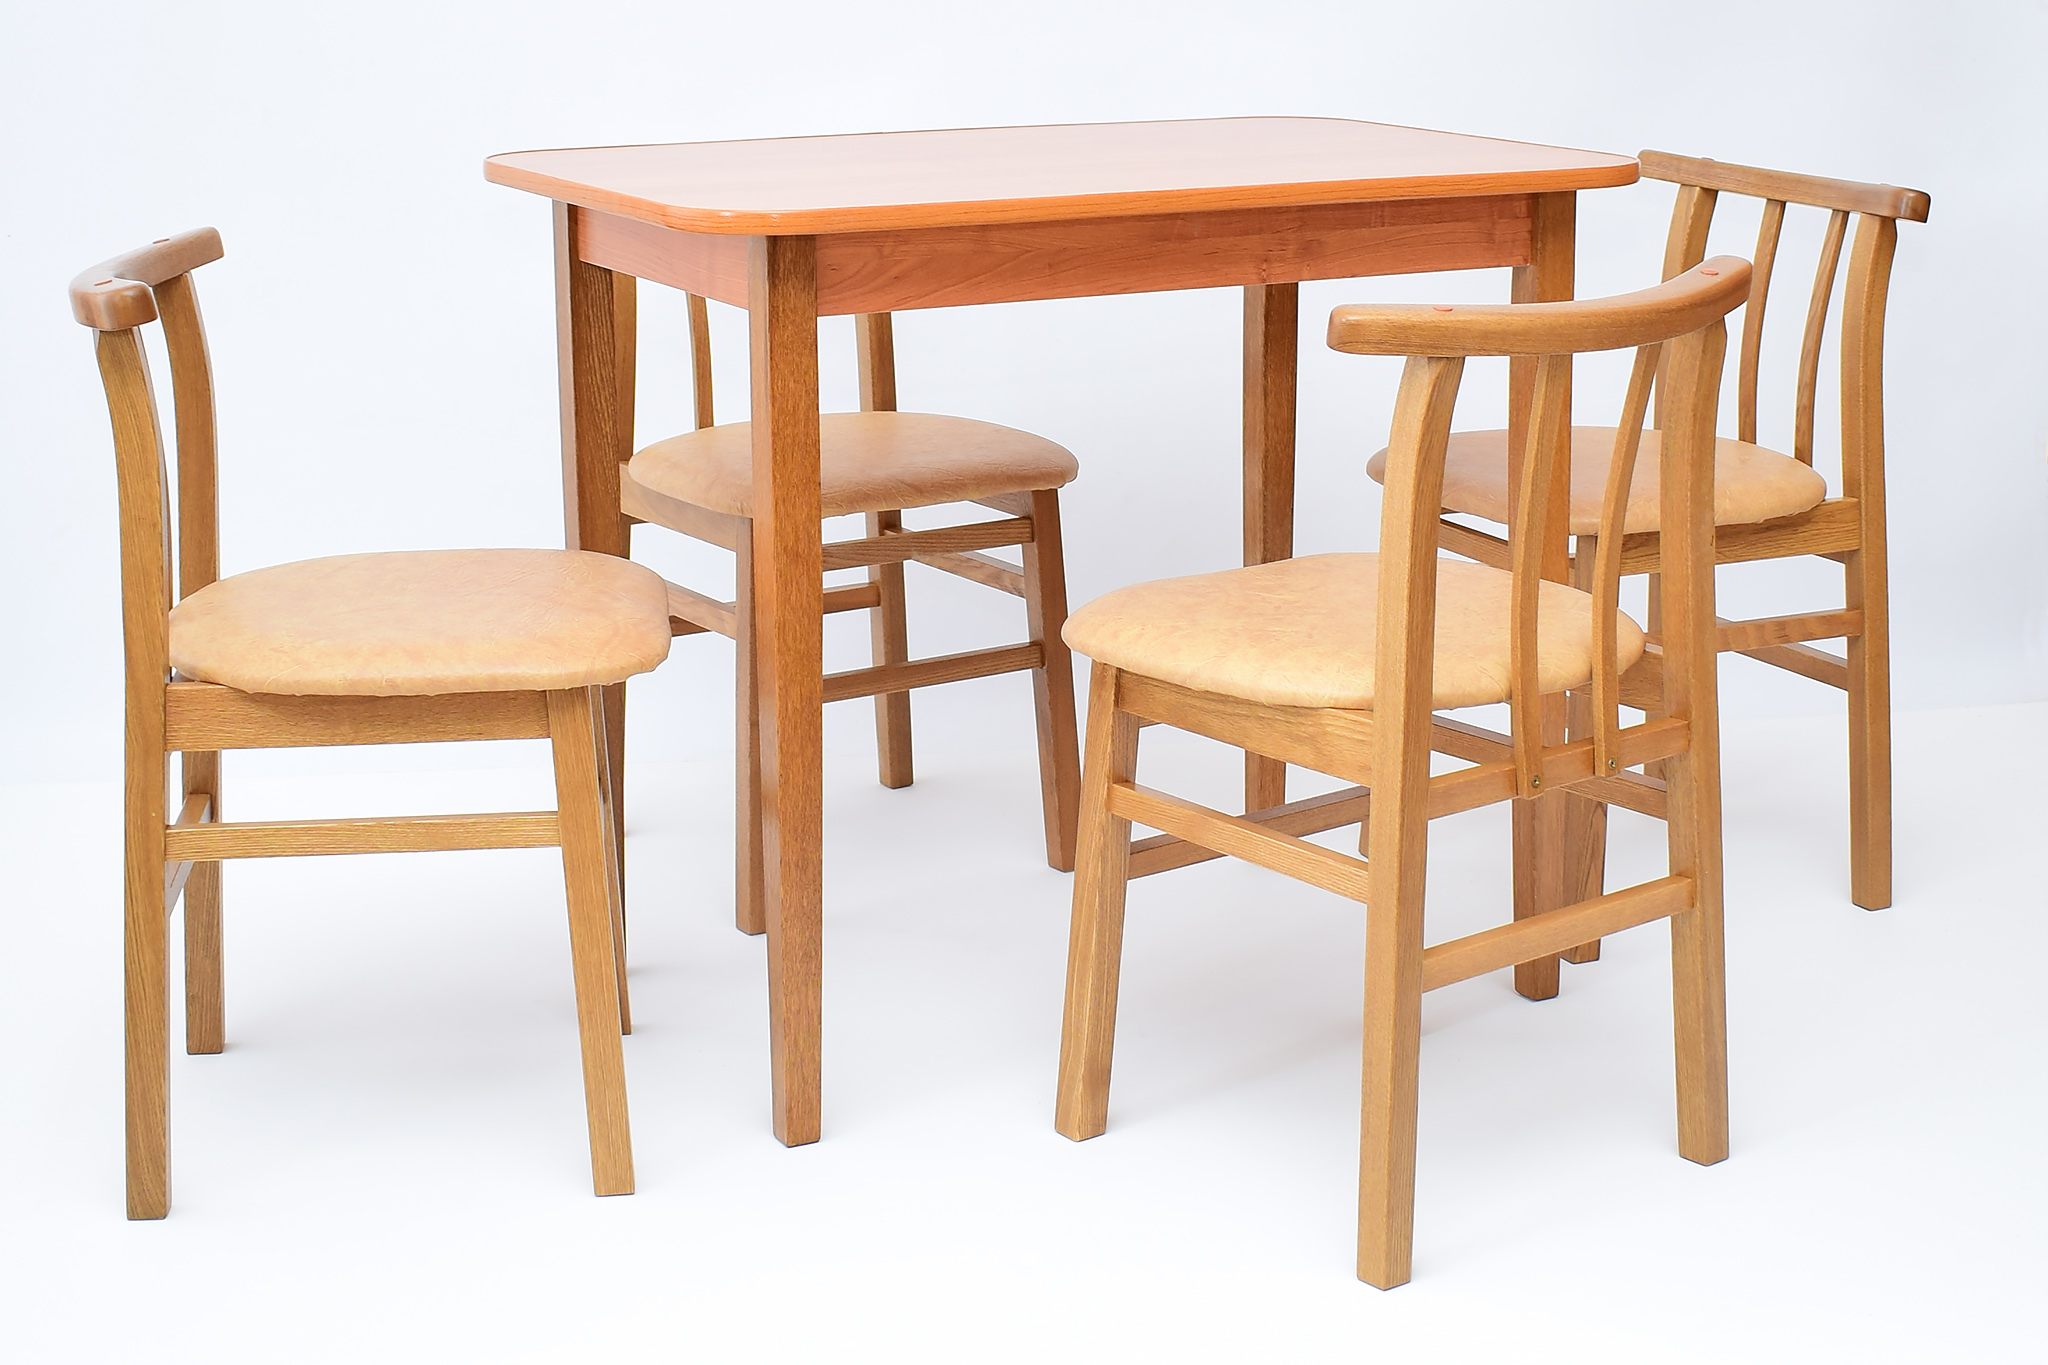 производим столы и стулья